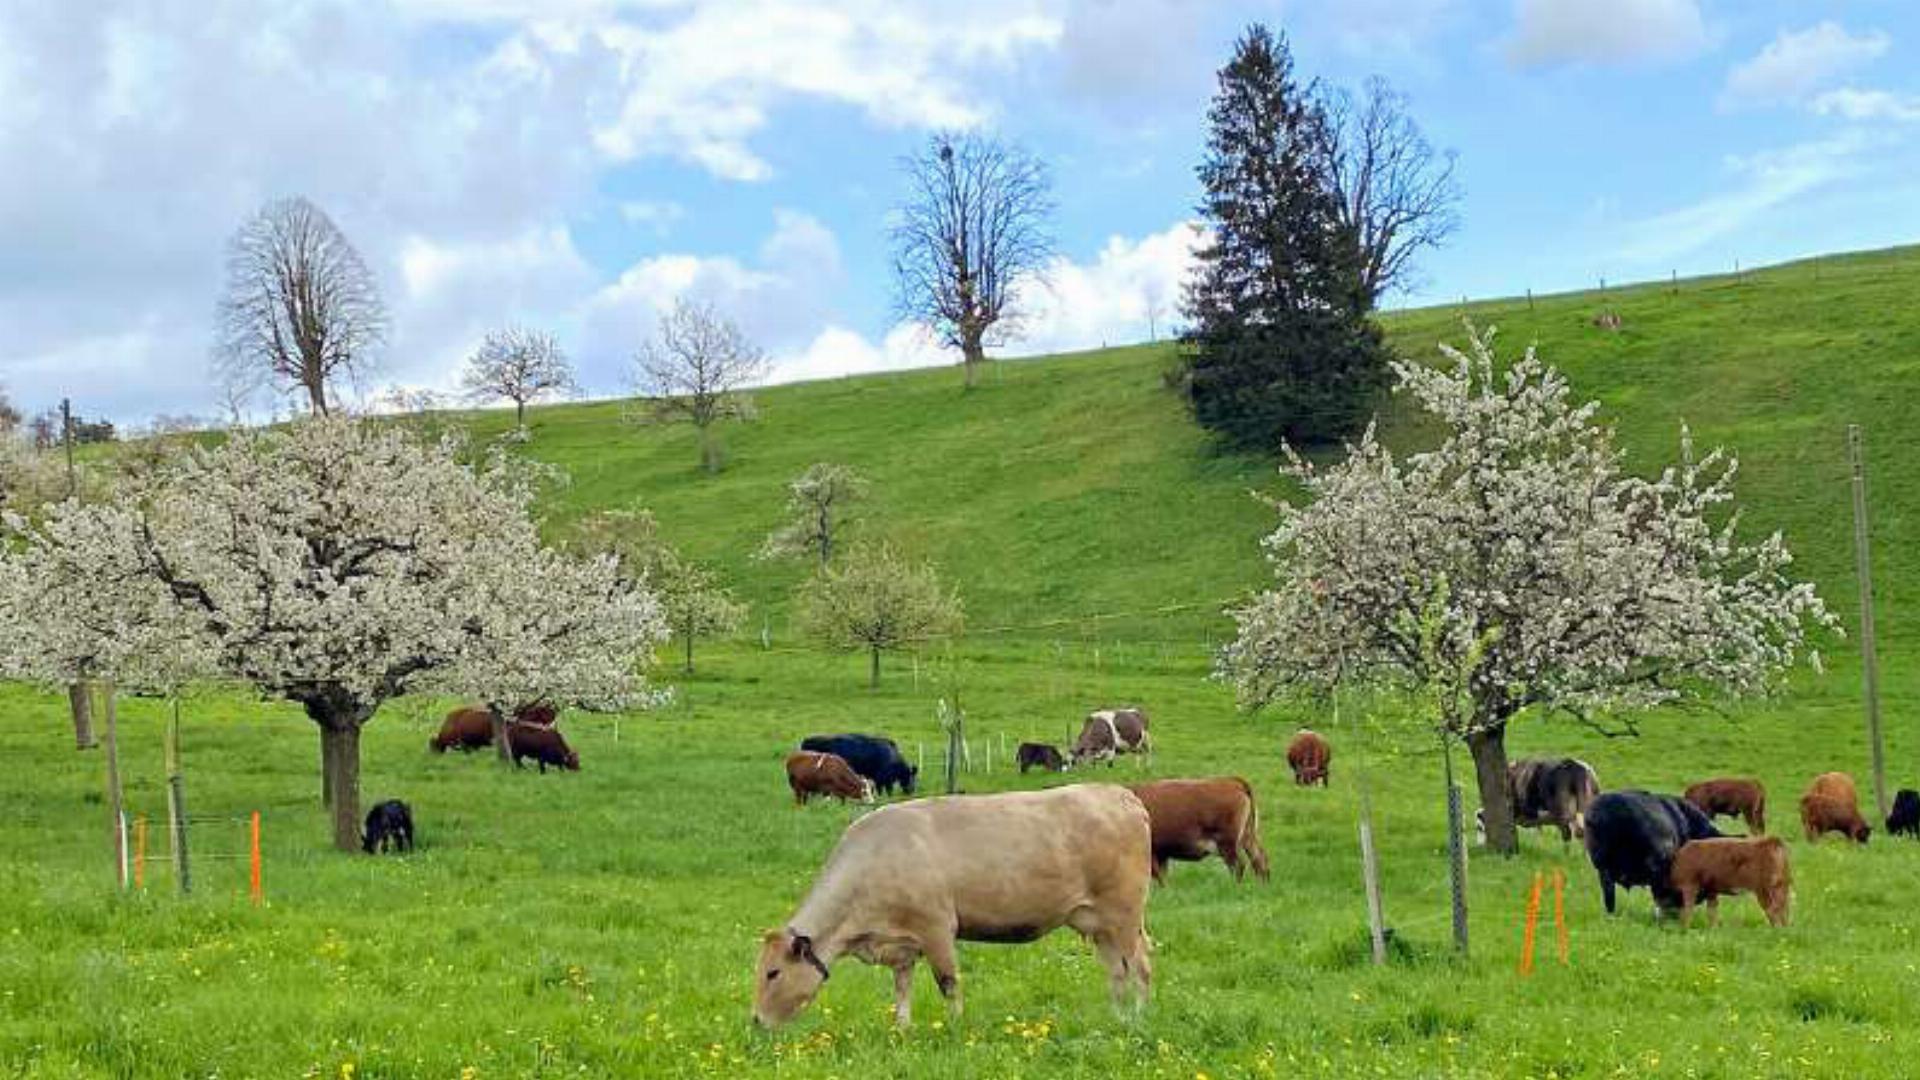 Mutterkühe, ihre Kälber und blühende Kirschbäume hat Heidy Gysin aus Langenbruck im Bild festgehalten.